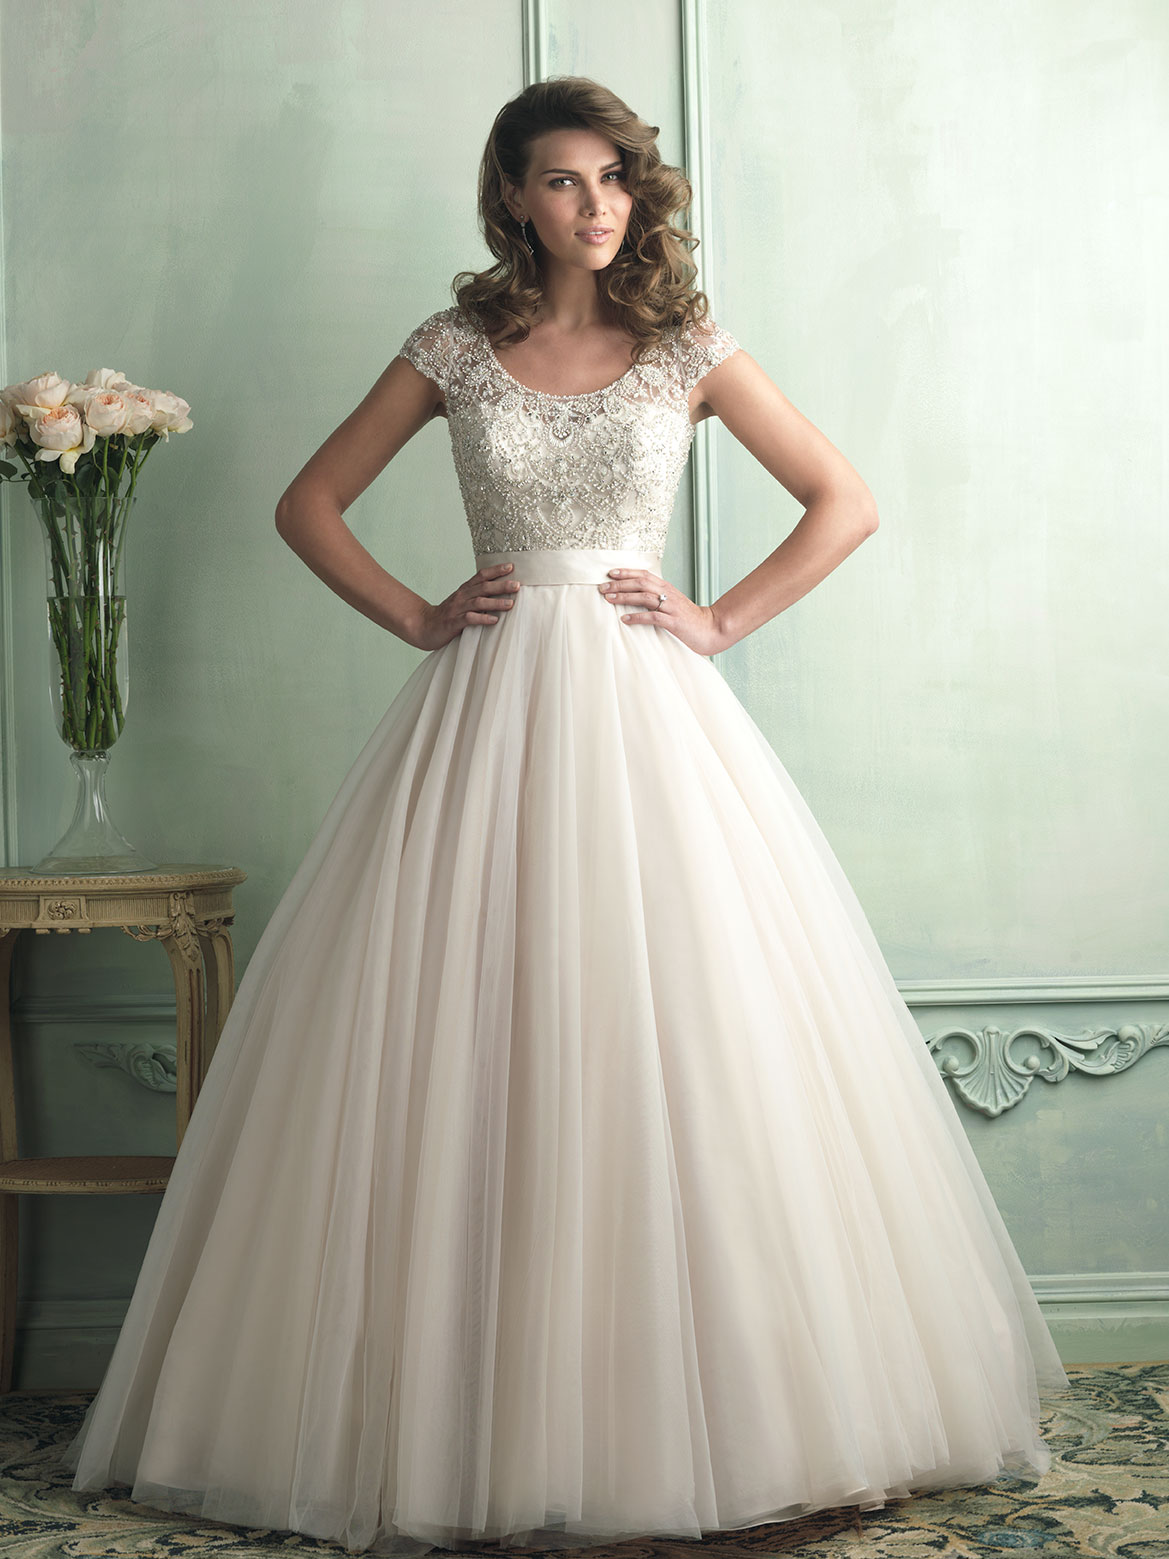 Аллюр Брайдал платье свадебное айвори 2013-2014 года